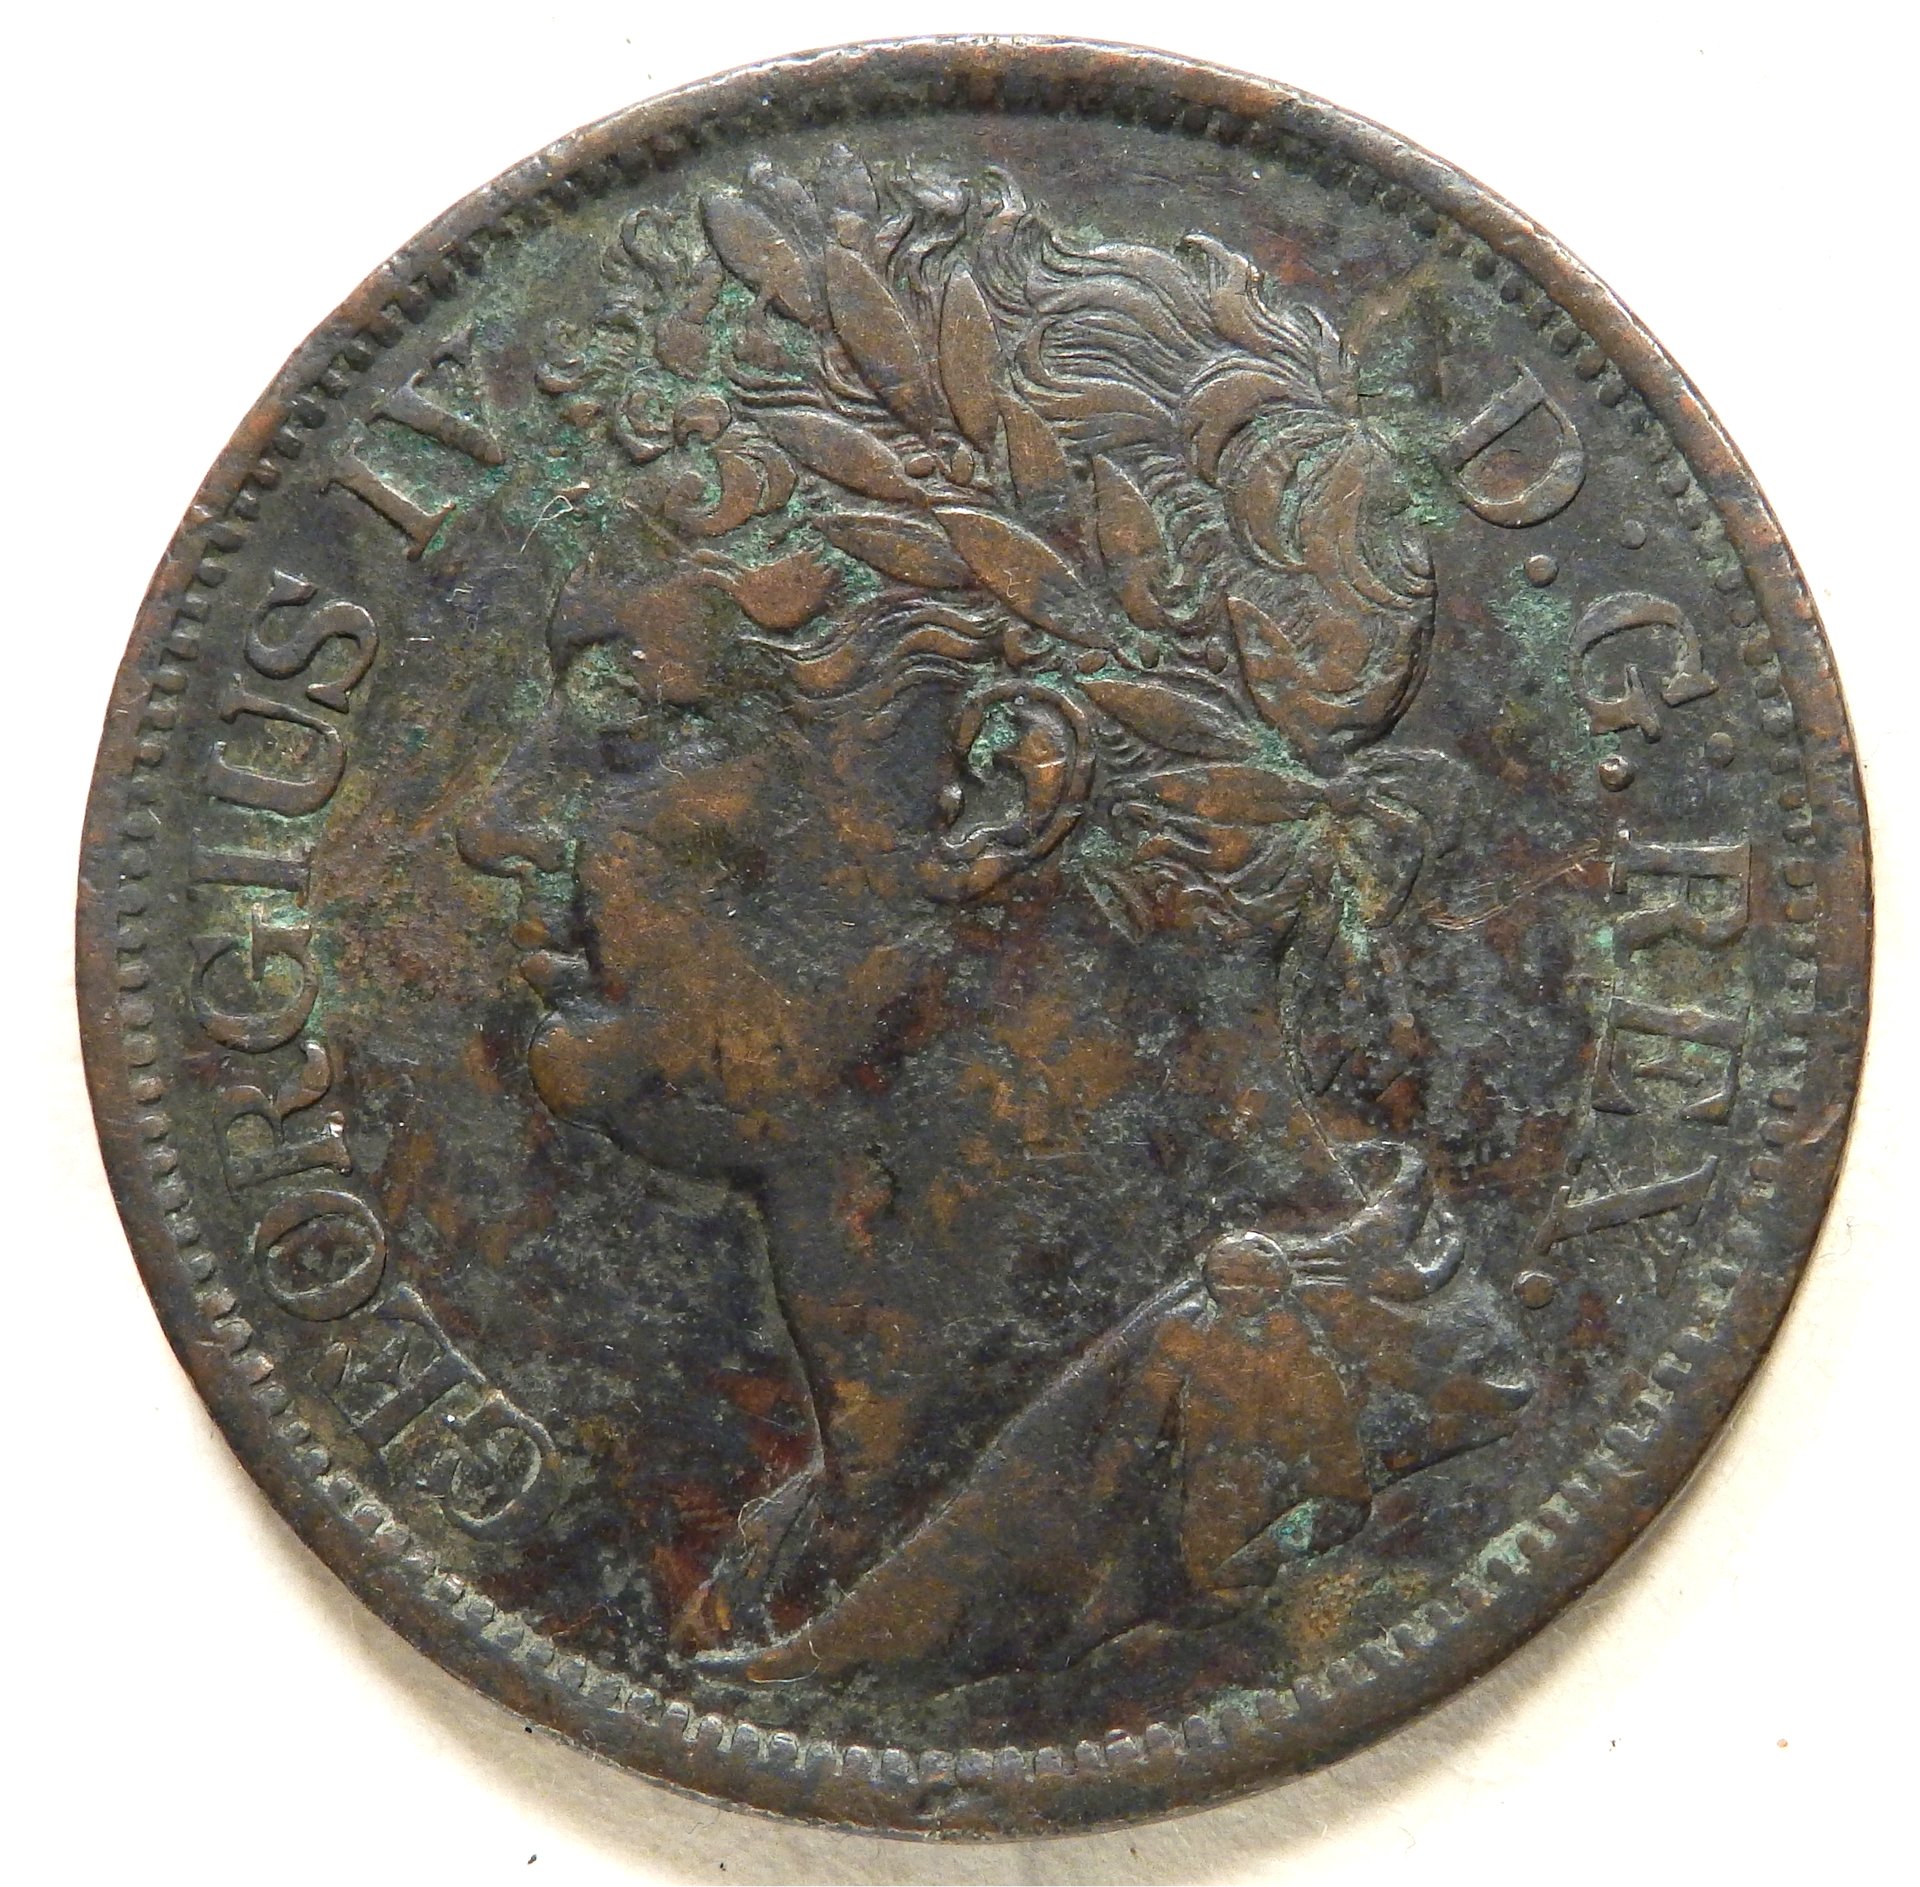 Ireland 1 penny 1822 obv.jpg